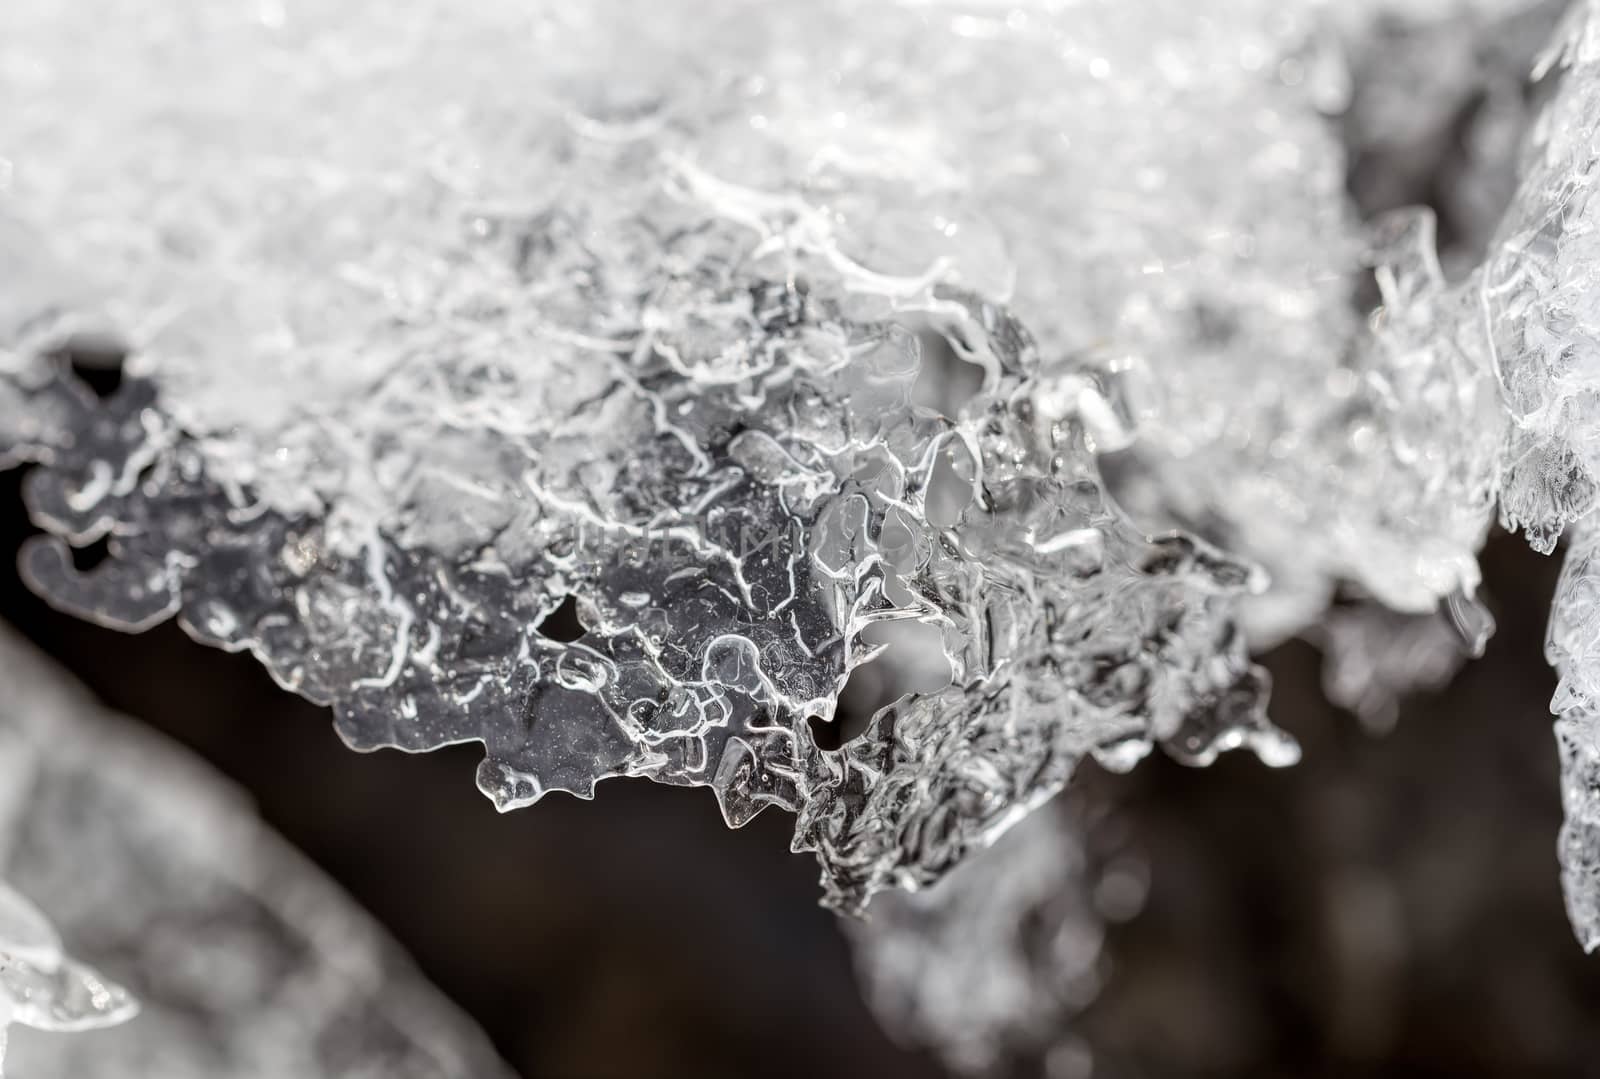 Abstract macro of frozen water